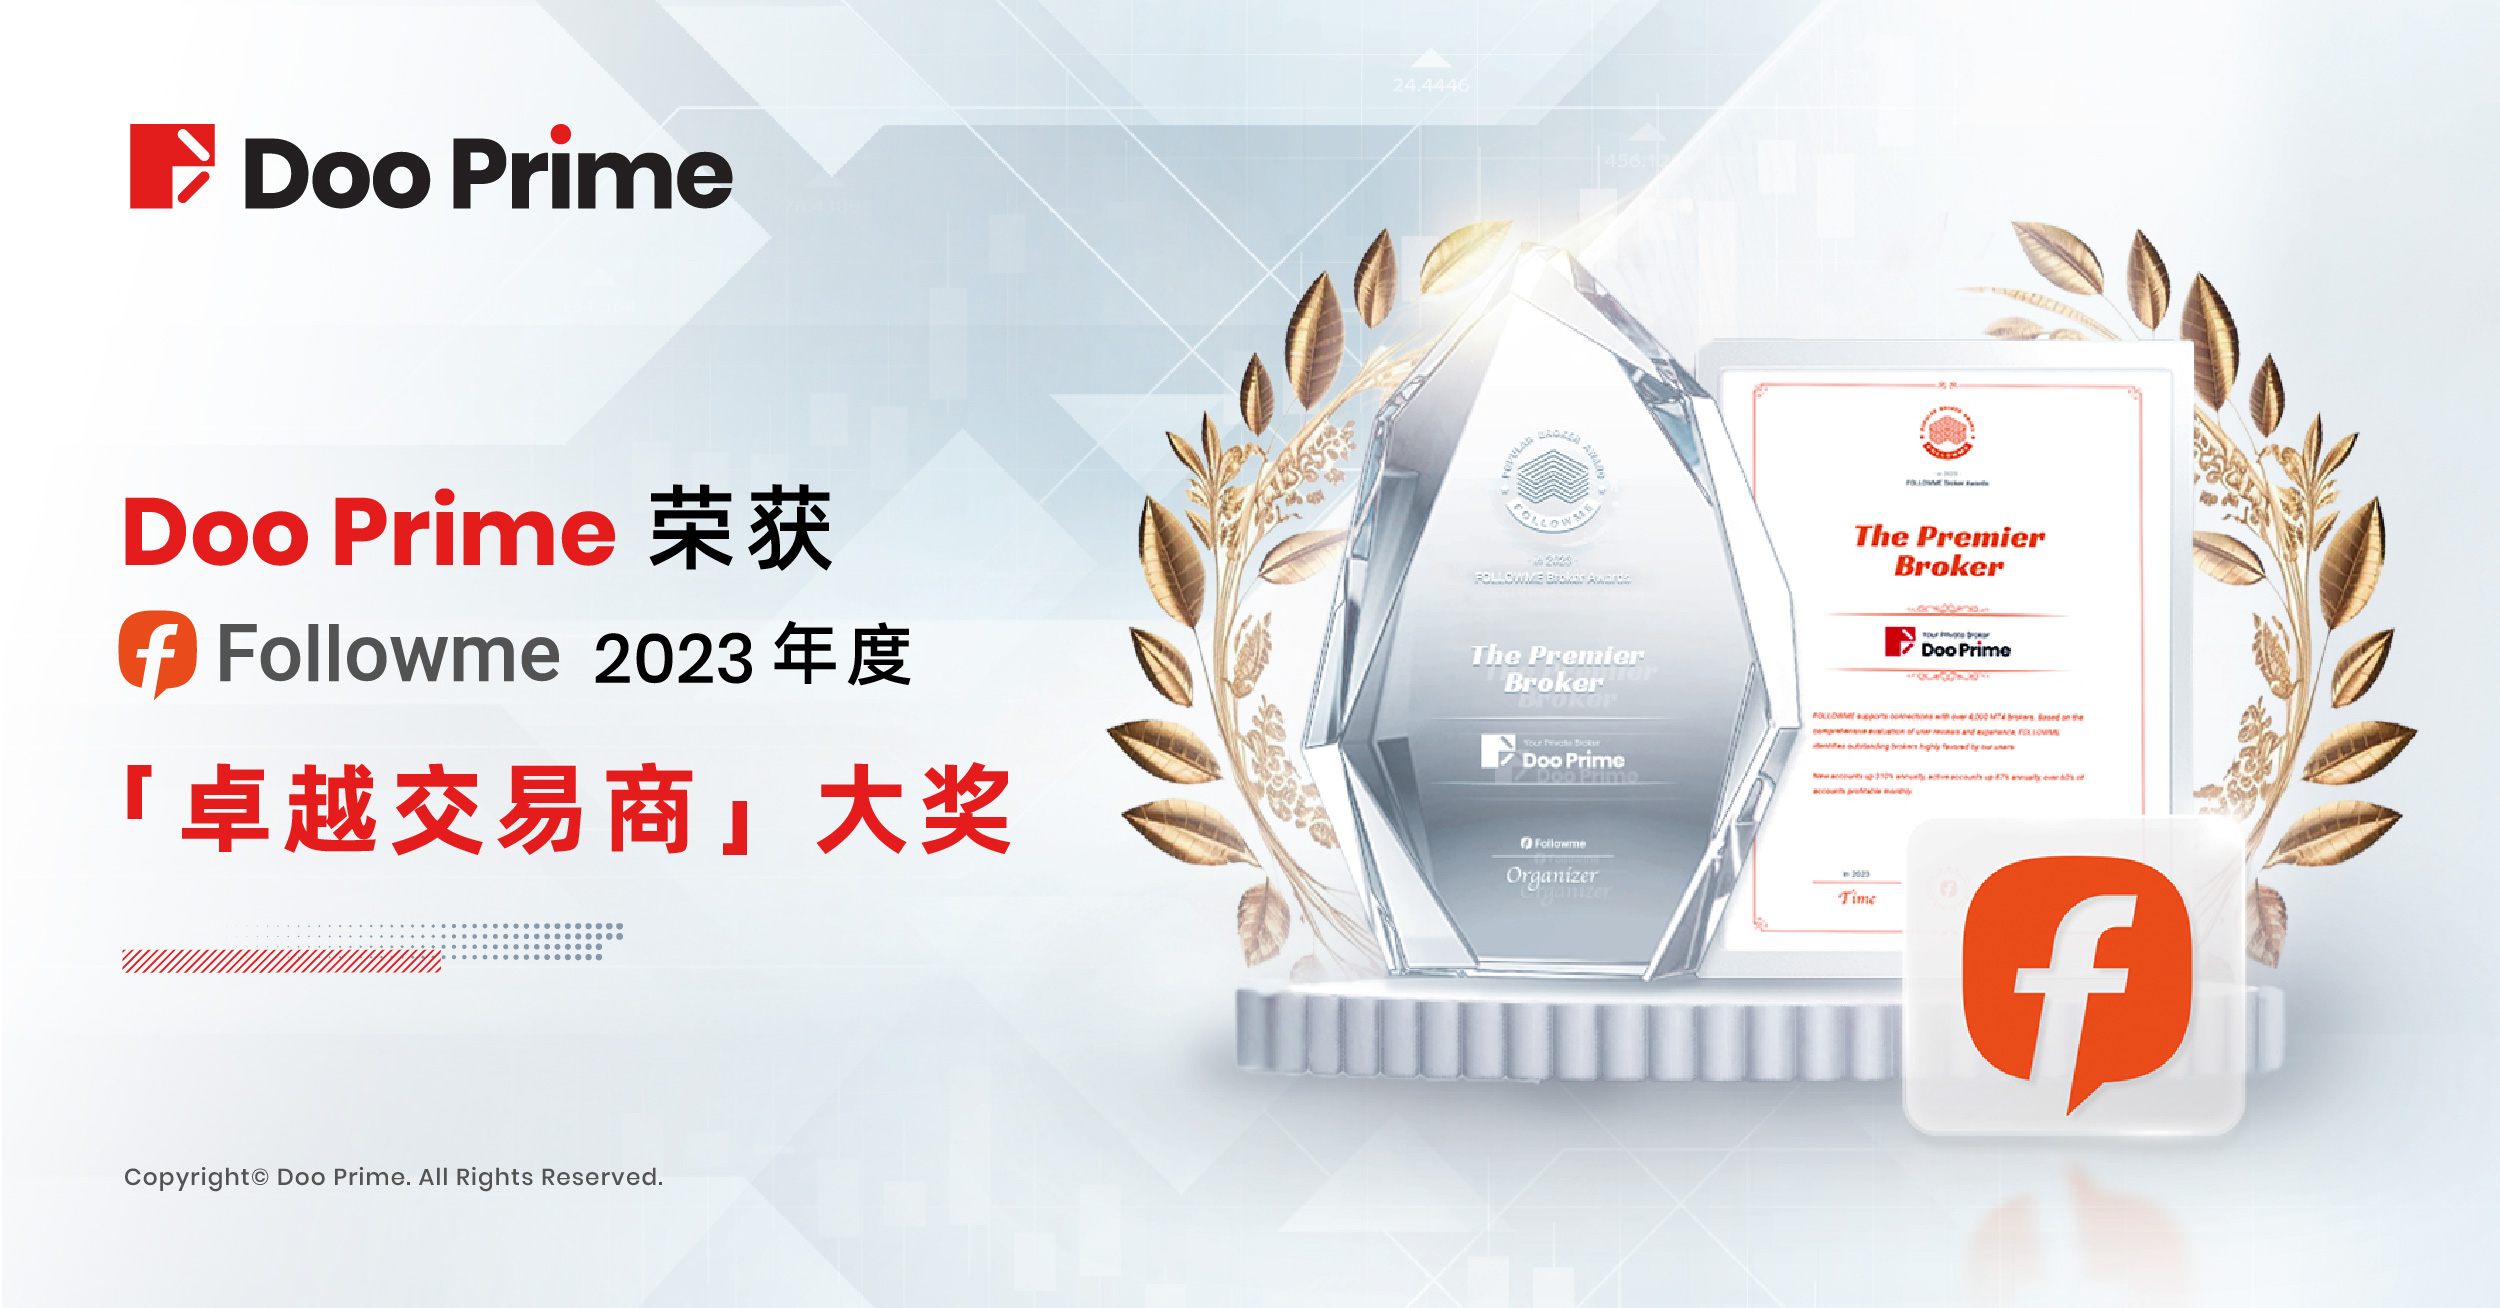 公司动态 | Doo Prime 荣获 2023 年 FOLLOWME“卓越交易商”大奖 